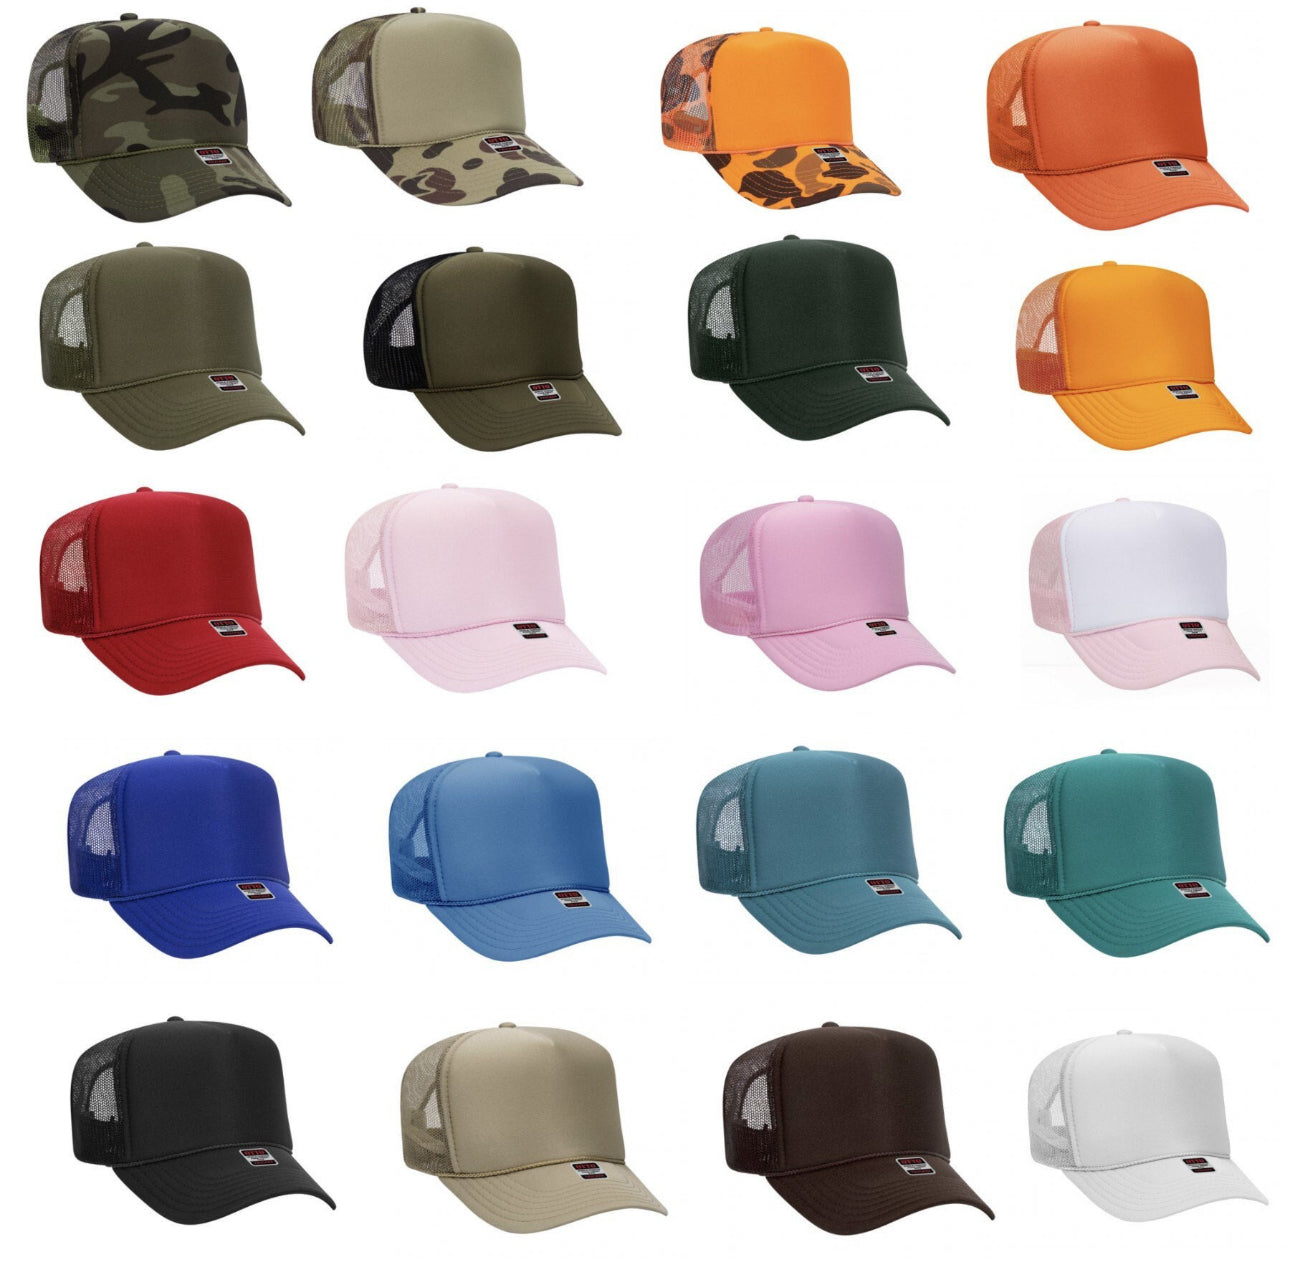 Example of Trucker Hats